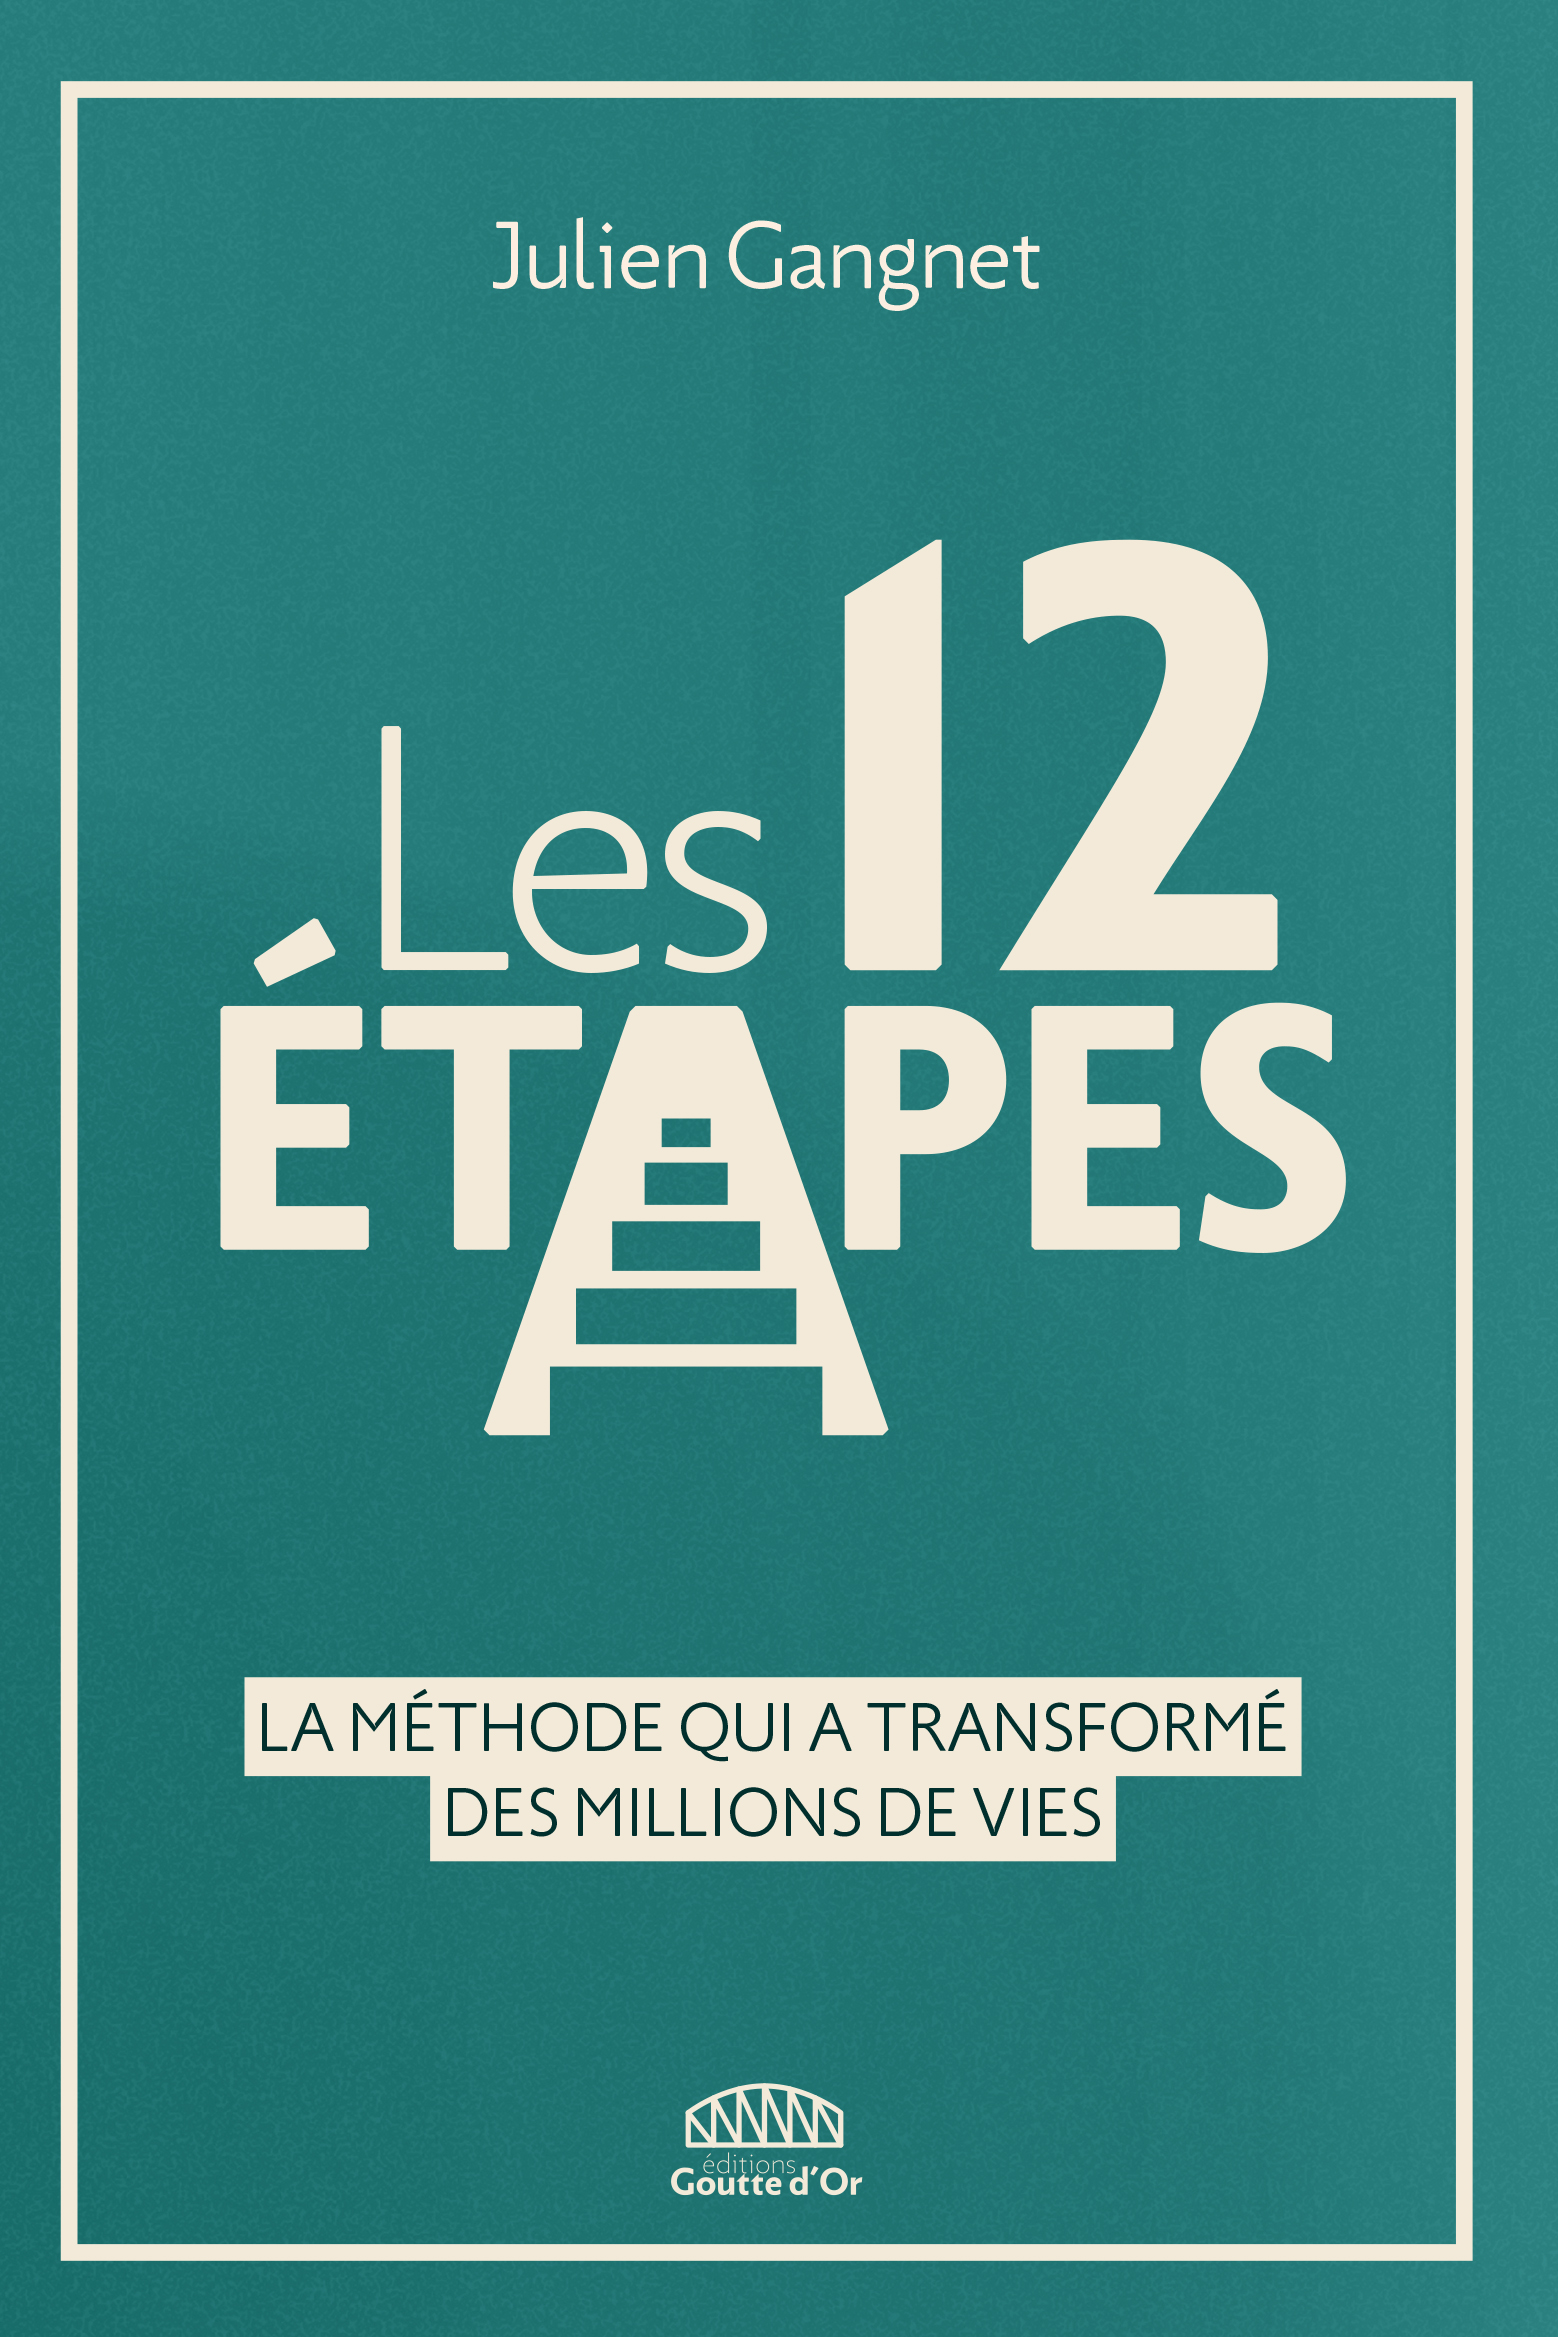 Les 12 Etapes (Julien Gangnet, éd. Goutte d'Or)